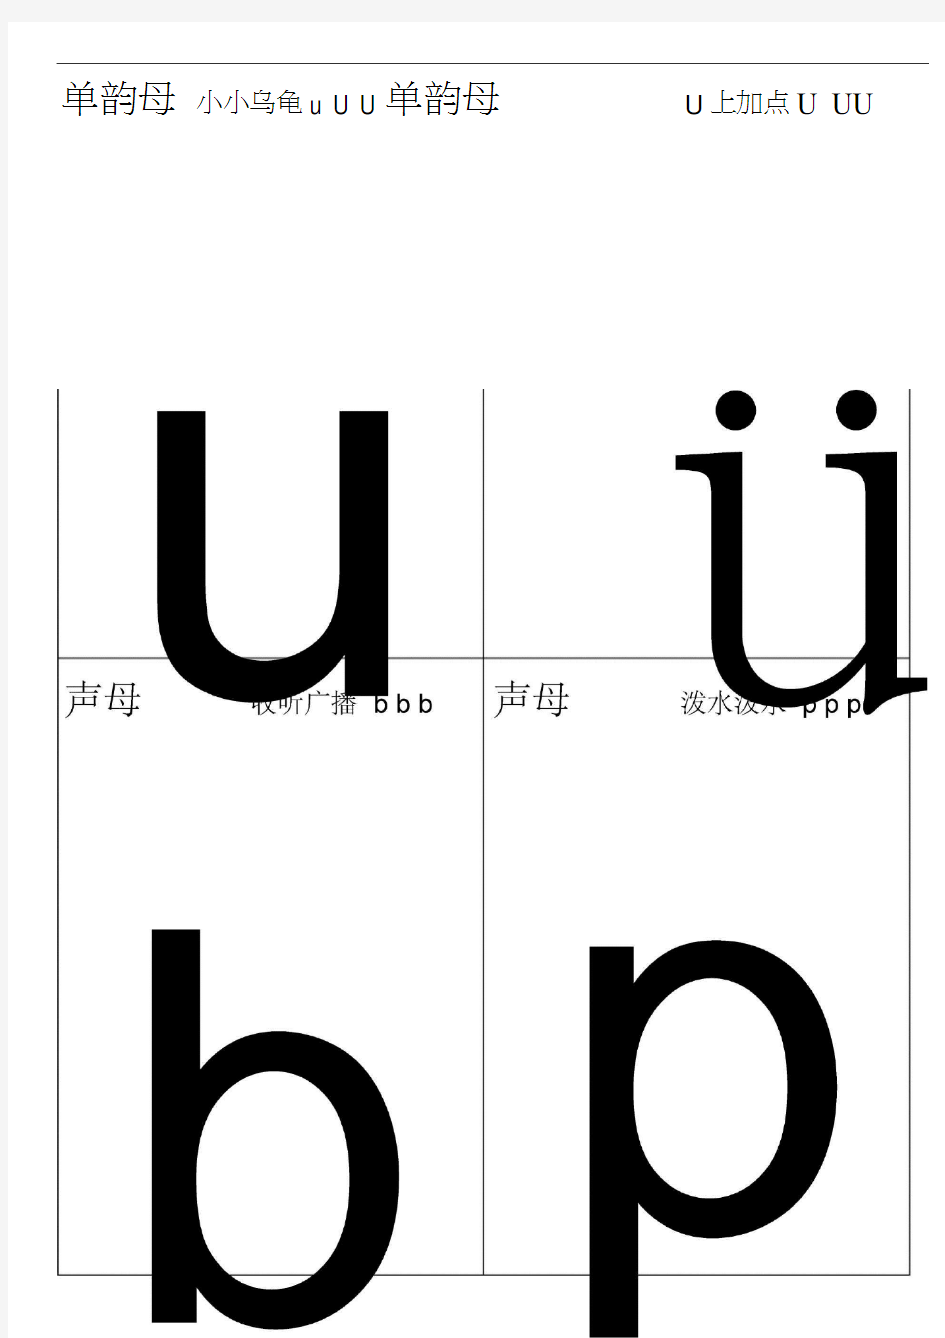 汉语拼音字母表卡片